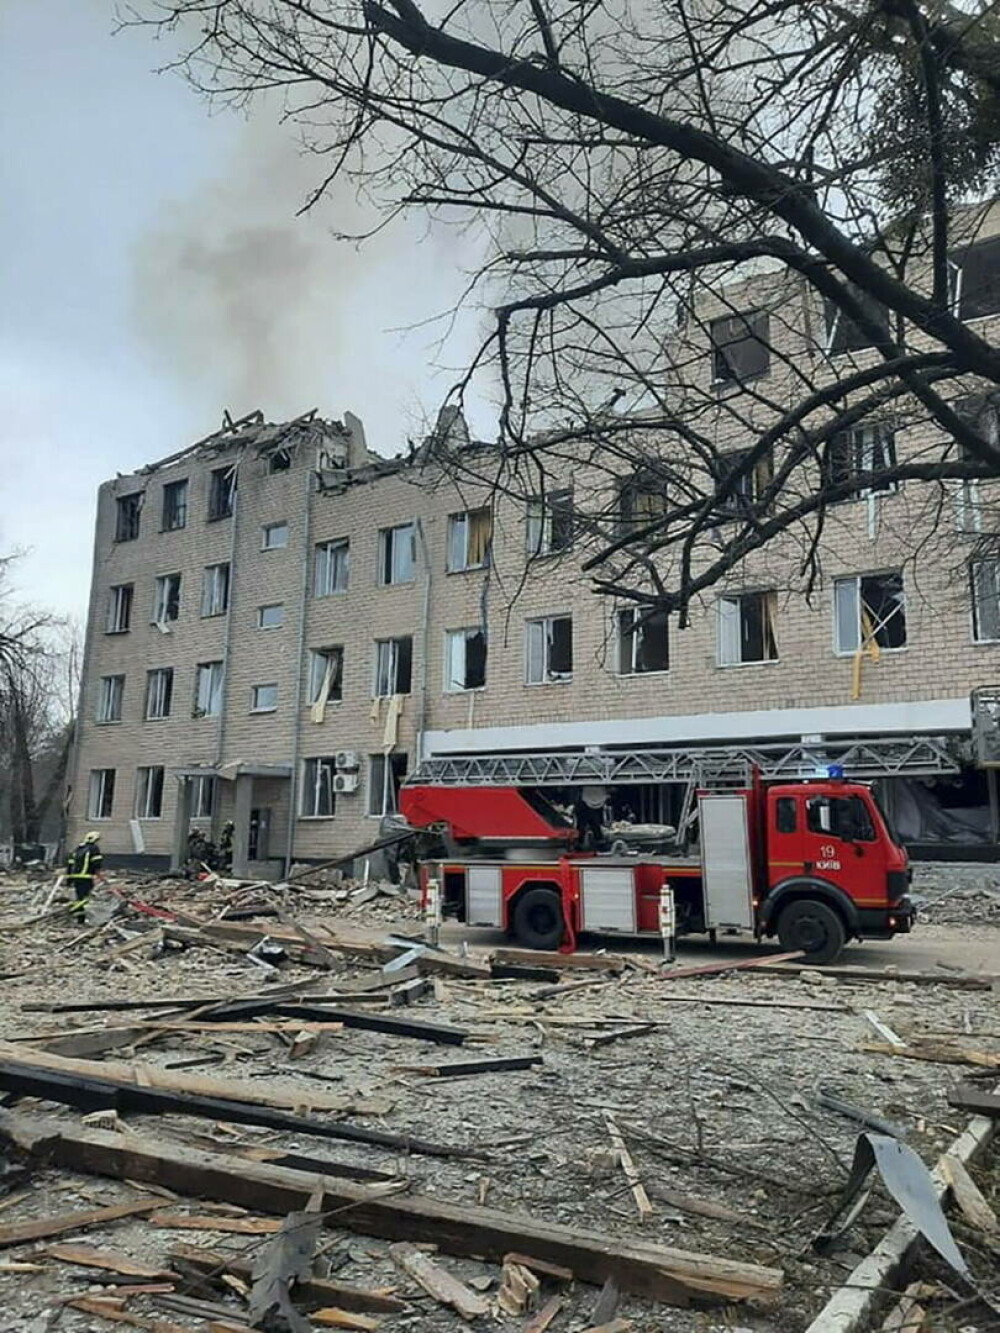 GALERIE FOTO. Imagini cu distrugerile provocate de rachetele ruse în Kiev. 137 de oameni au murit în Ucraina - Imaginea 2